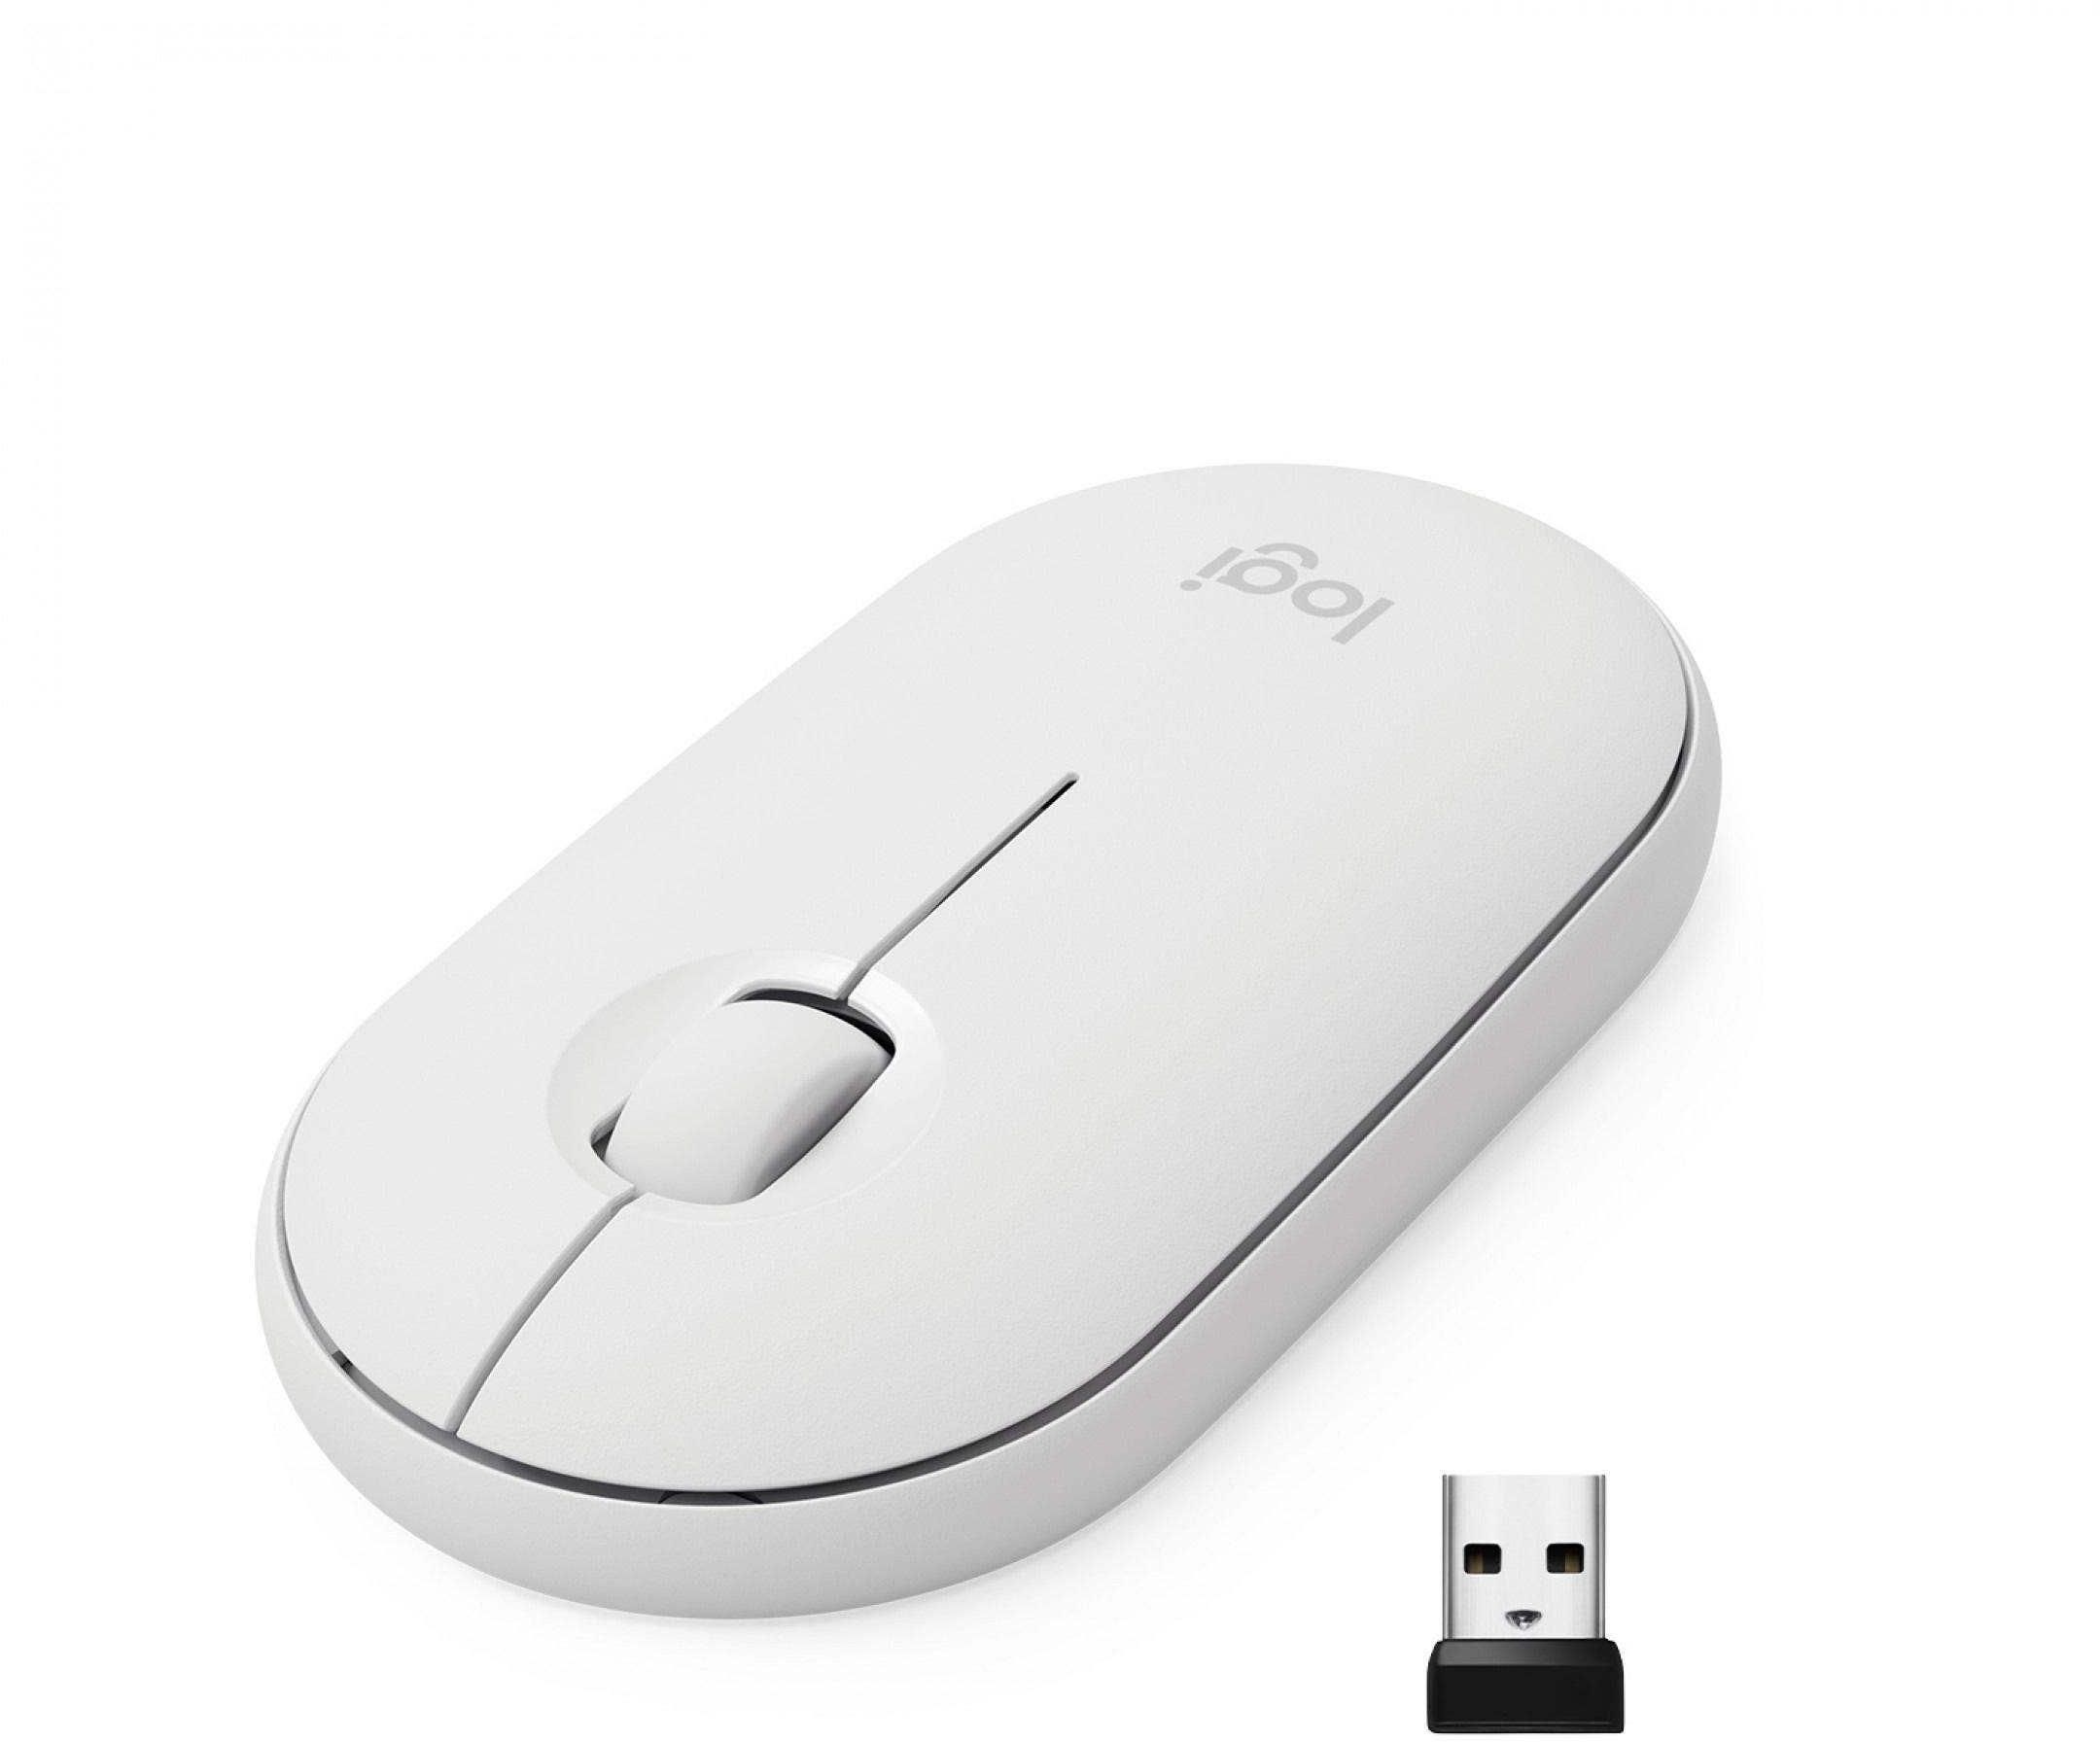 Logitech M350 Pebble Mouse